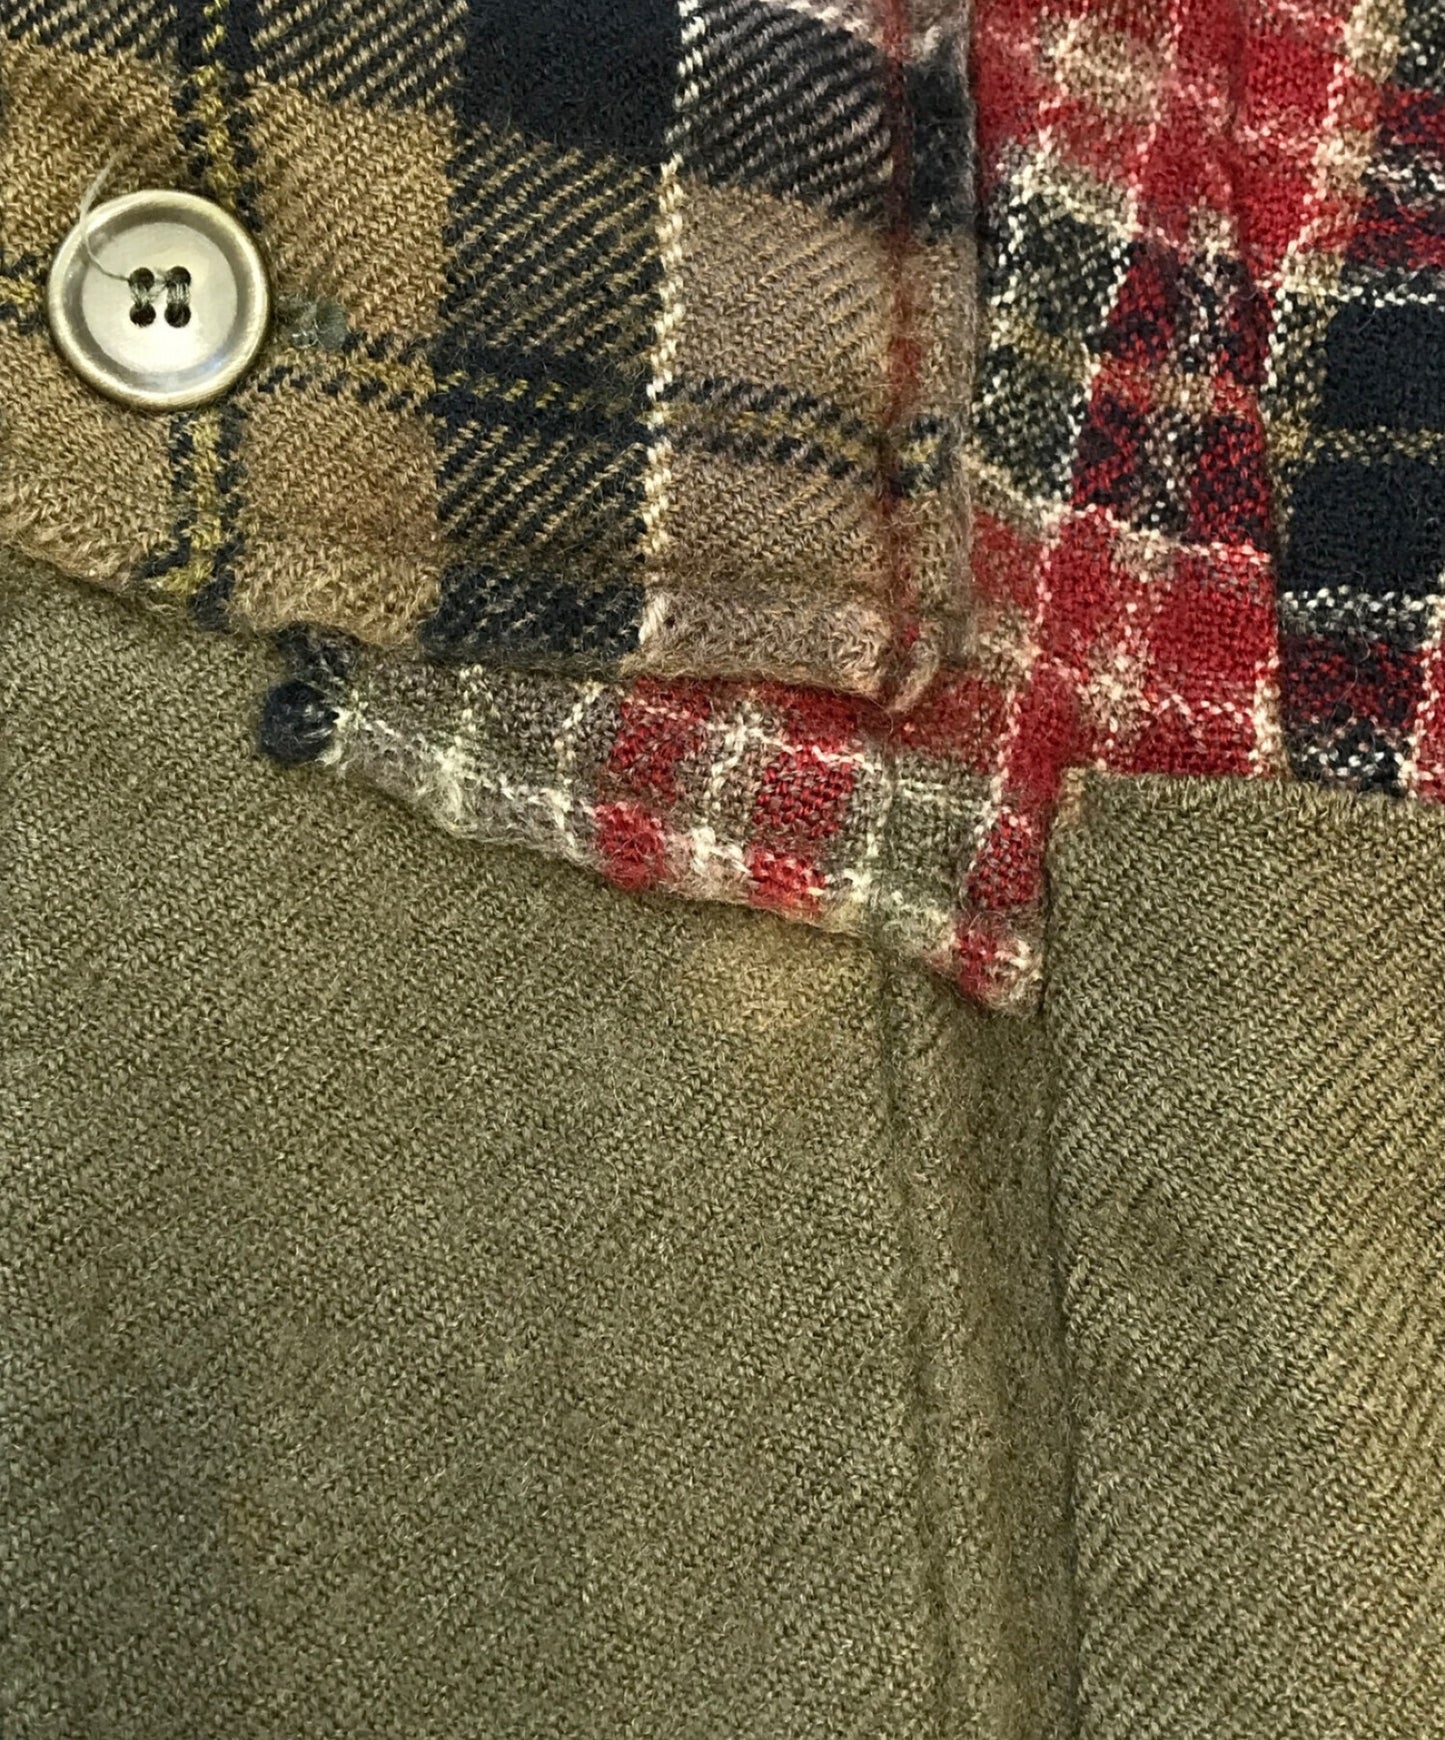 [Pre-owned] COMME des GARCONS SHIRT Shrunken Patchwork Wool Jacket